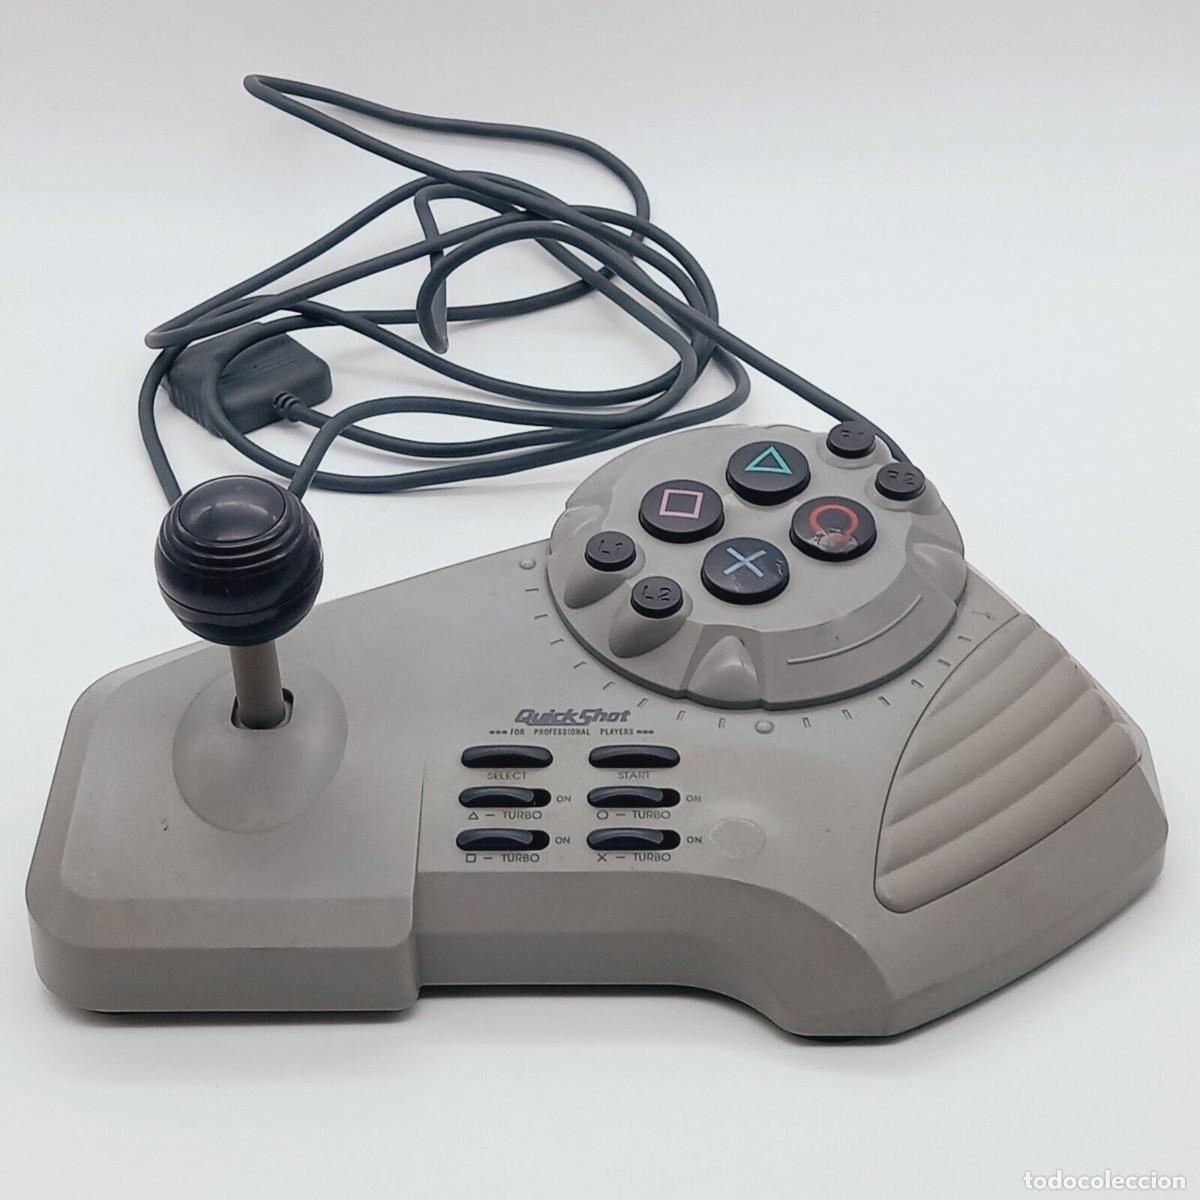 PS1 Controller Joystick for Sony PlayStation 1 Quickshot original PSX  vintage